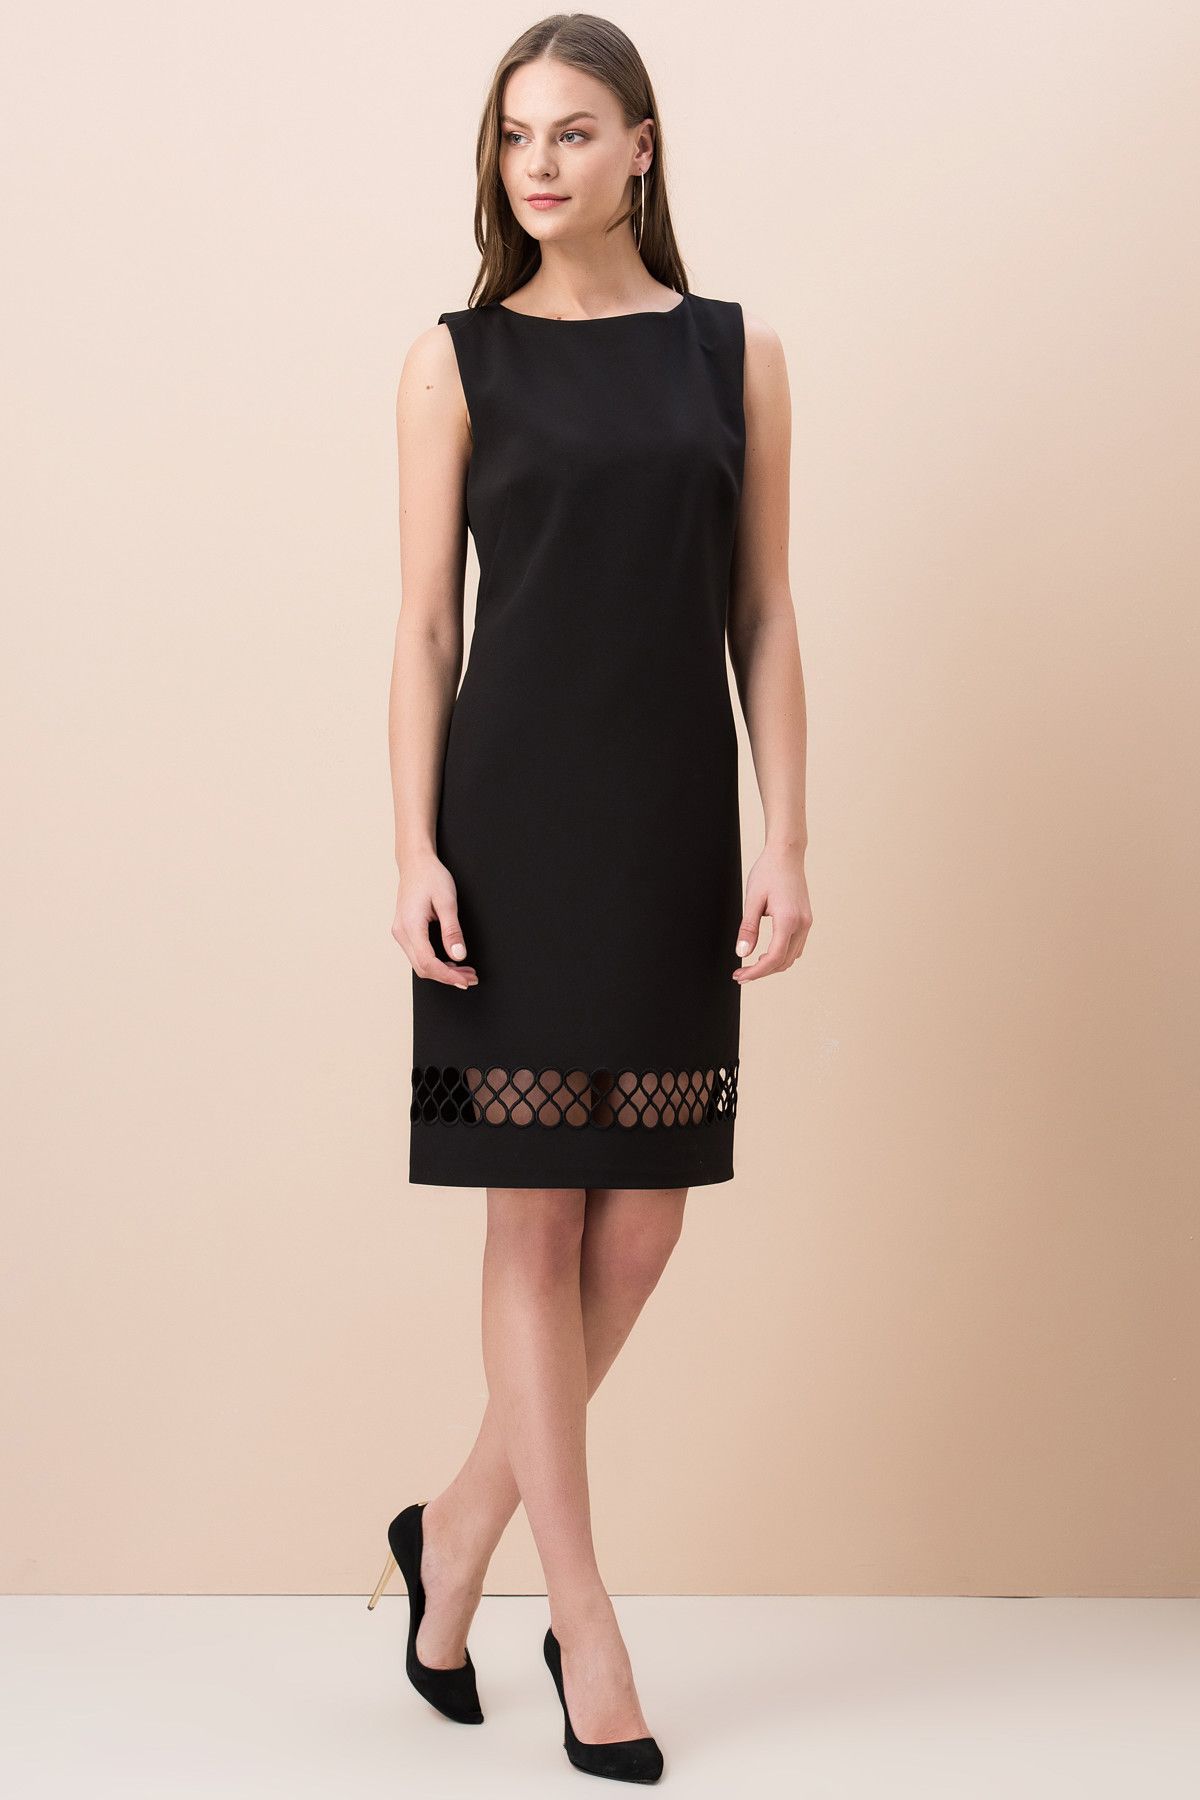 Y-London Kadın Siyah Oversize Etek İşlemeli Elbise EX-51978